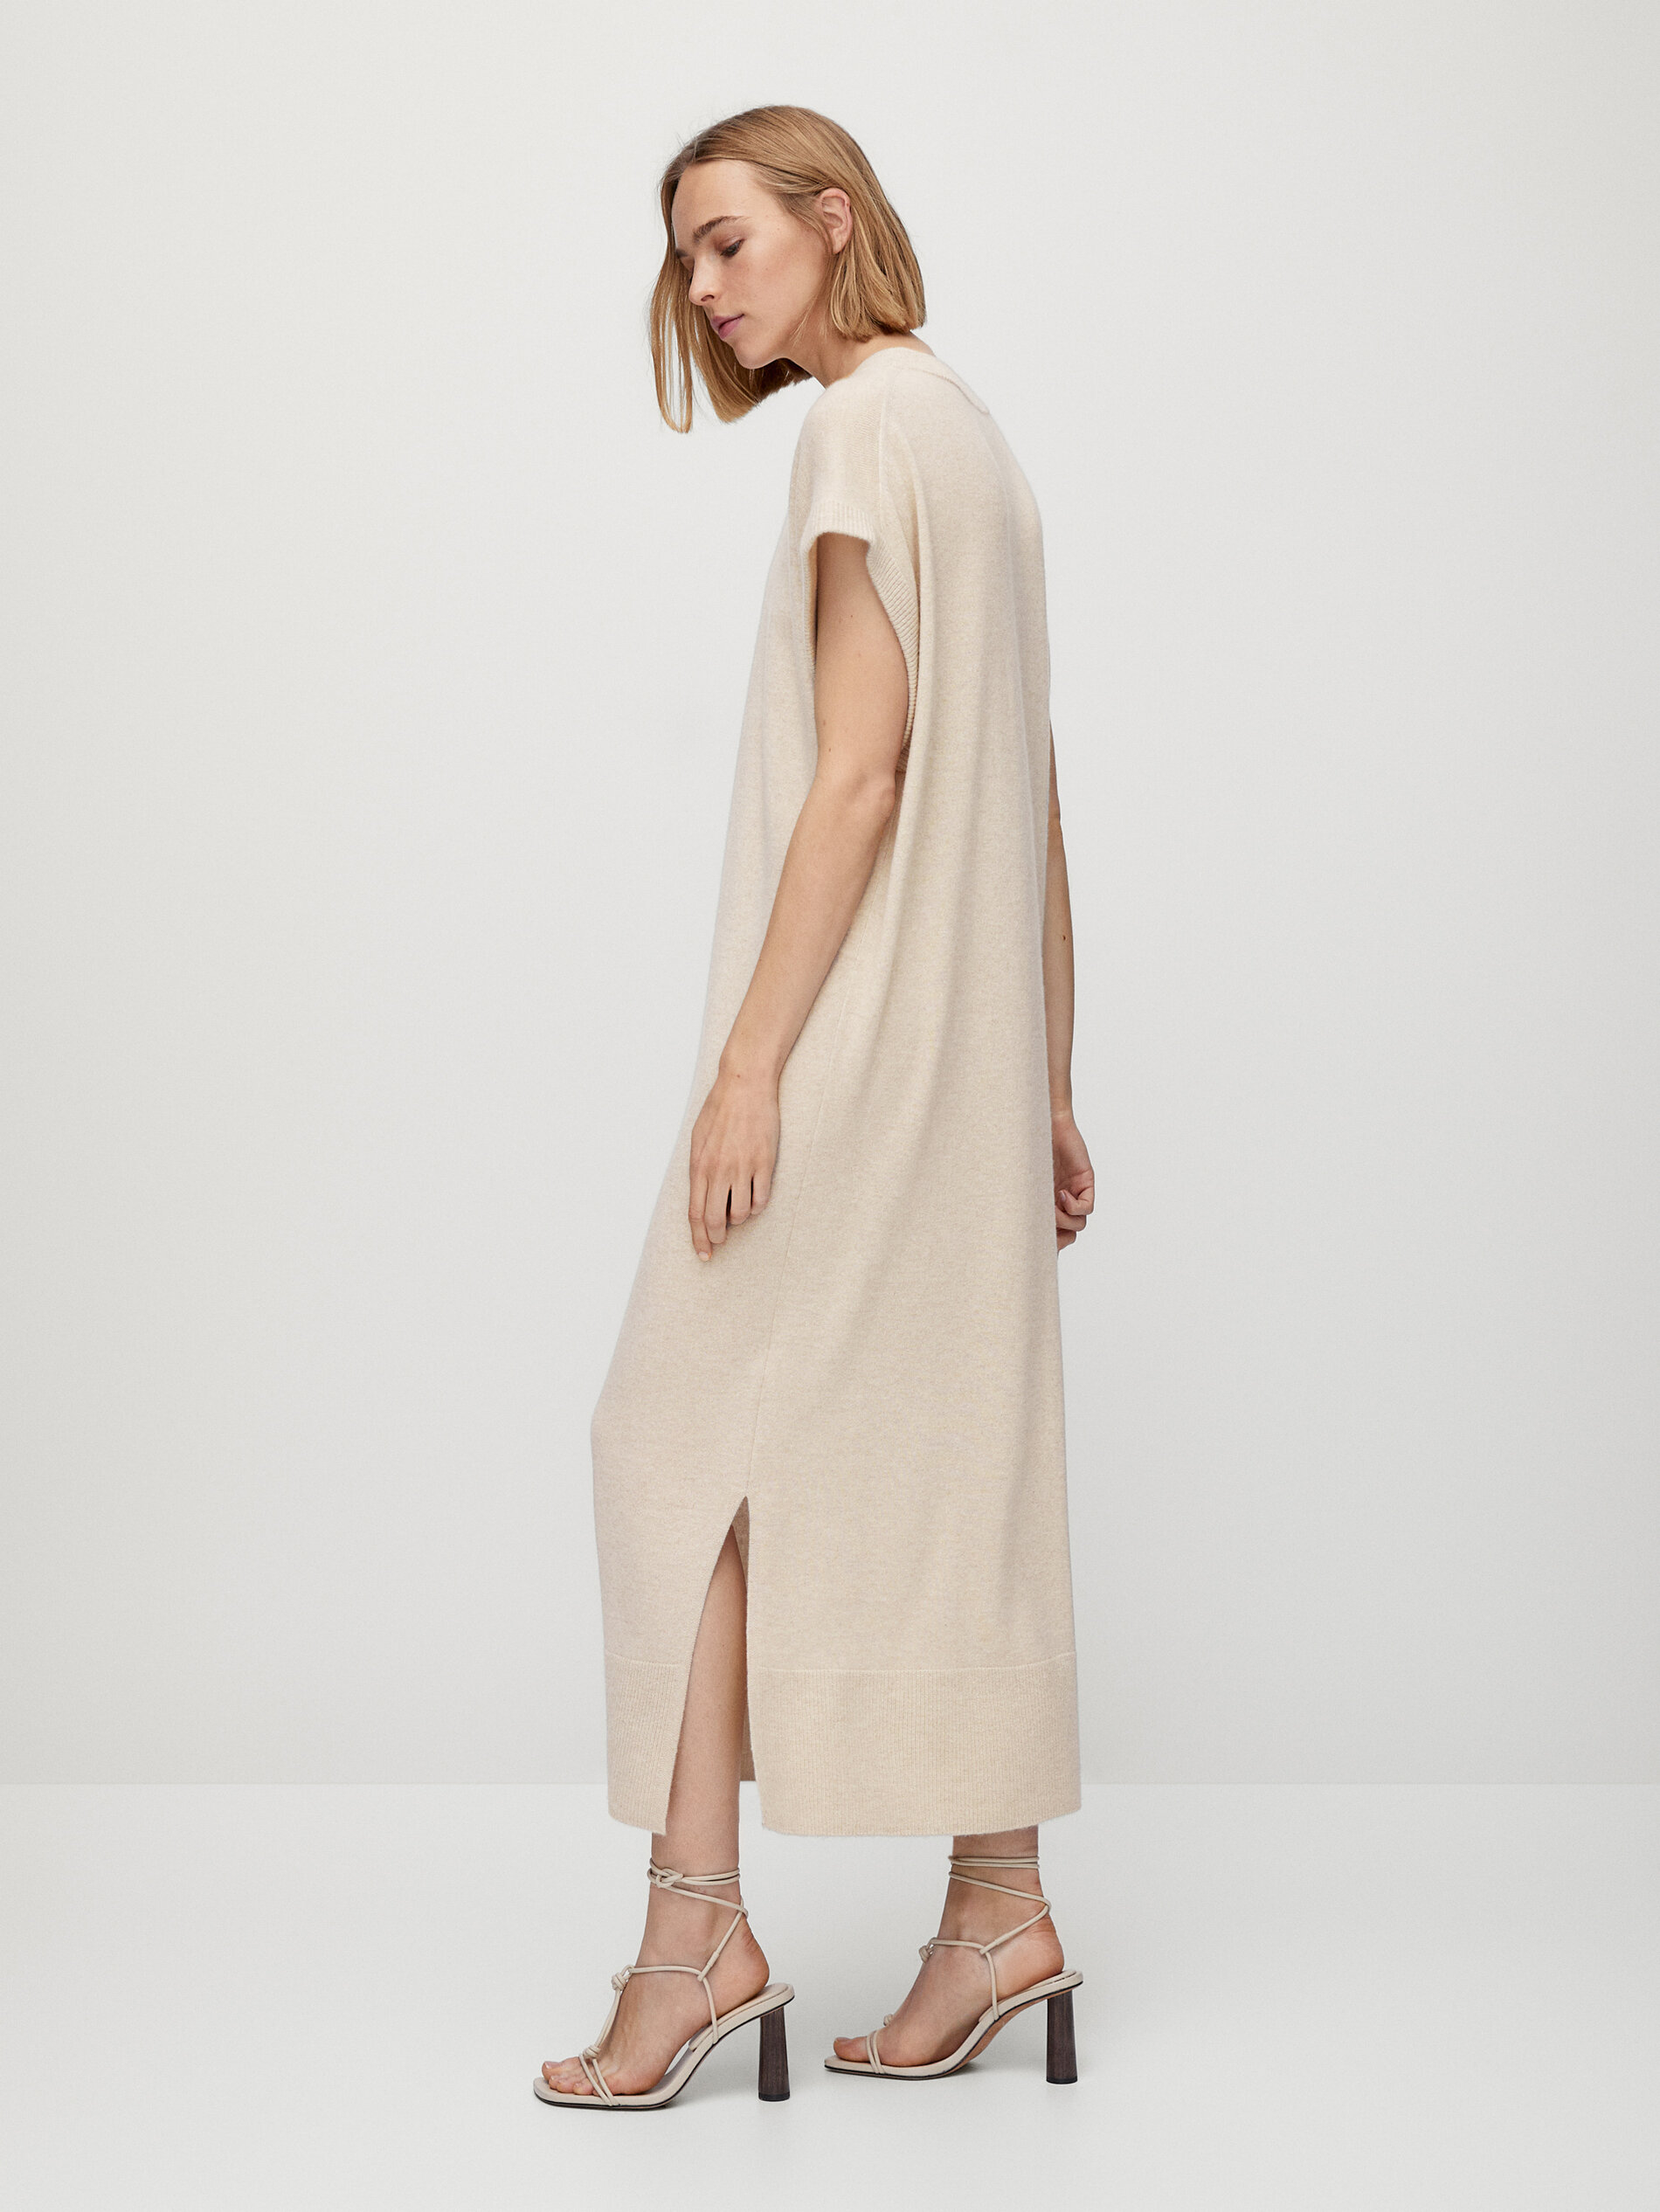 Long 100% cashmere short sleeve dress